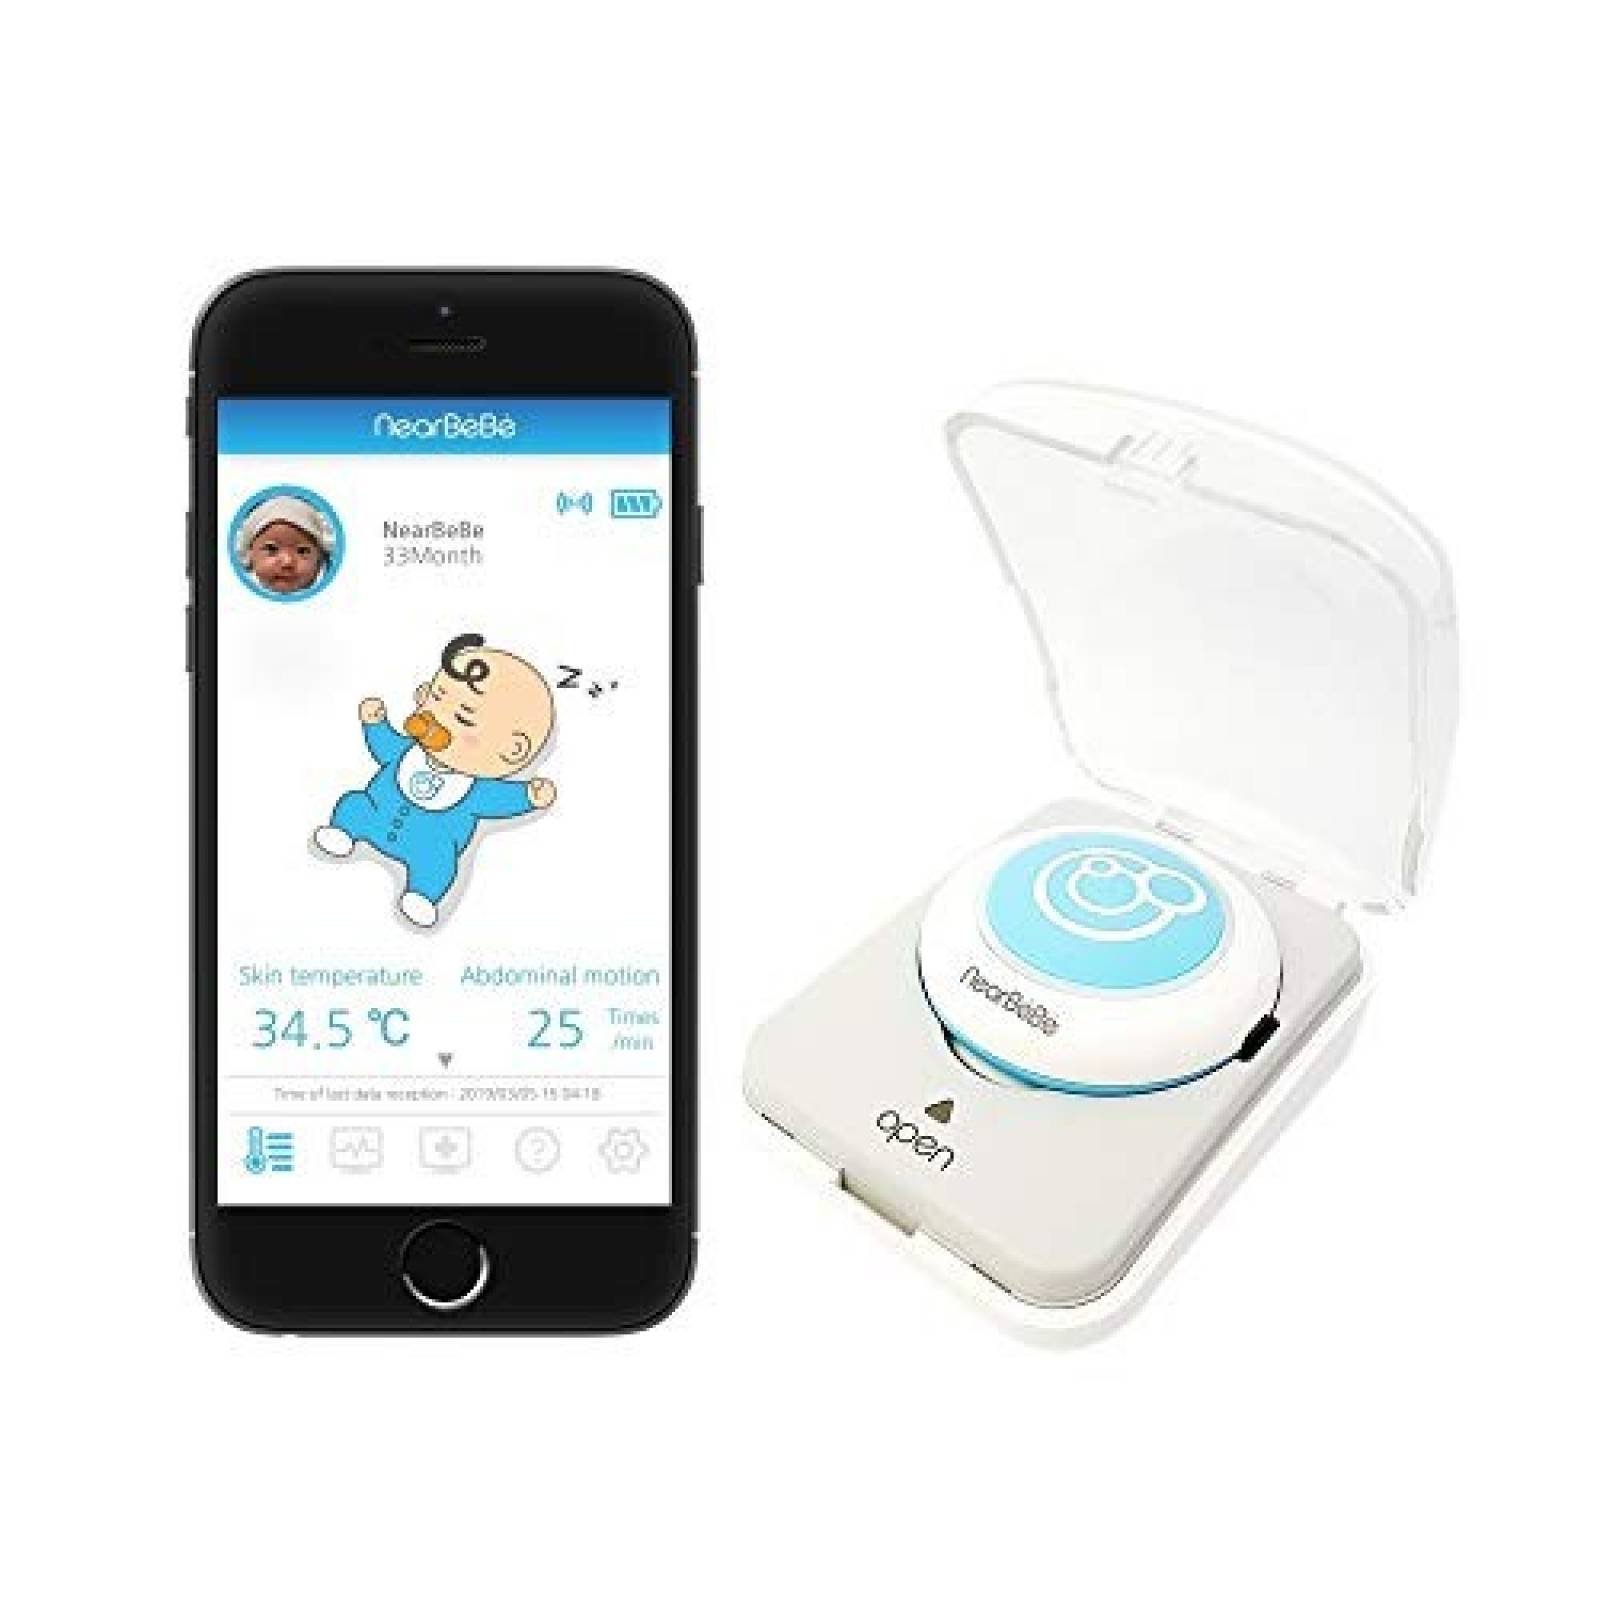 Alarma monitor temperatura bebé NearBeBe mov y respiración